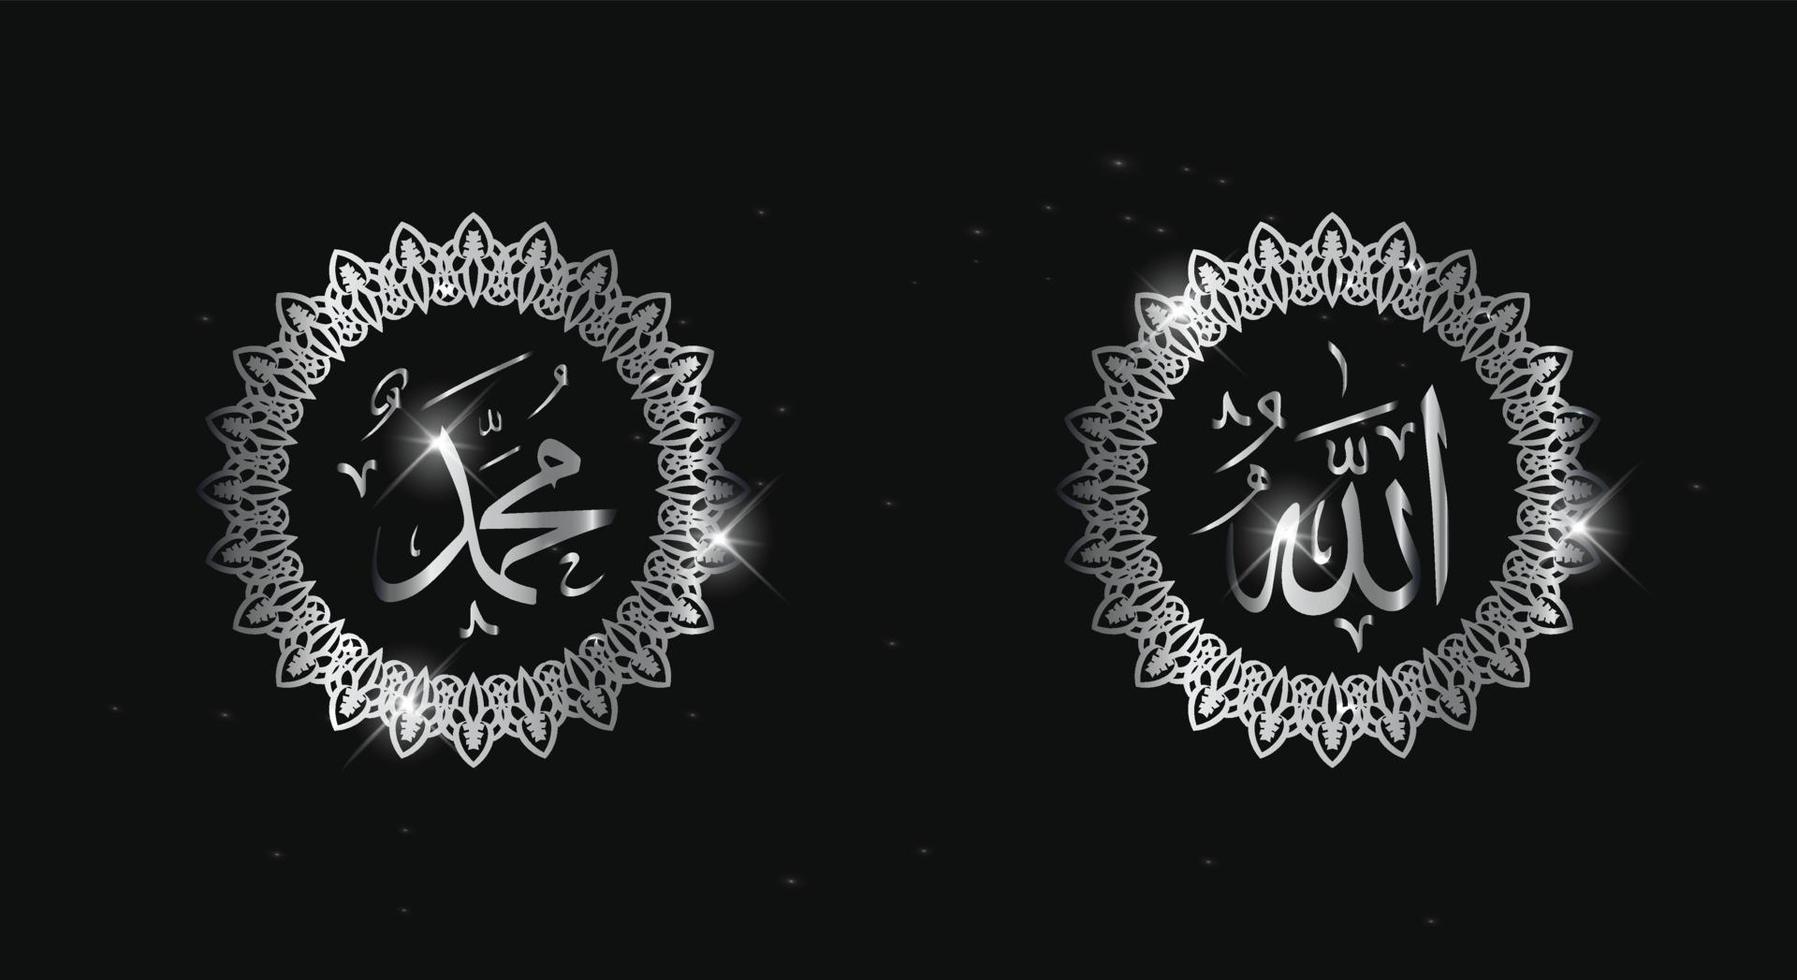 allah muhammad arabische kalligraphie mit kreisrahmen und silberner farbe lokalisiert auf schwarzem hintergrund vektor